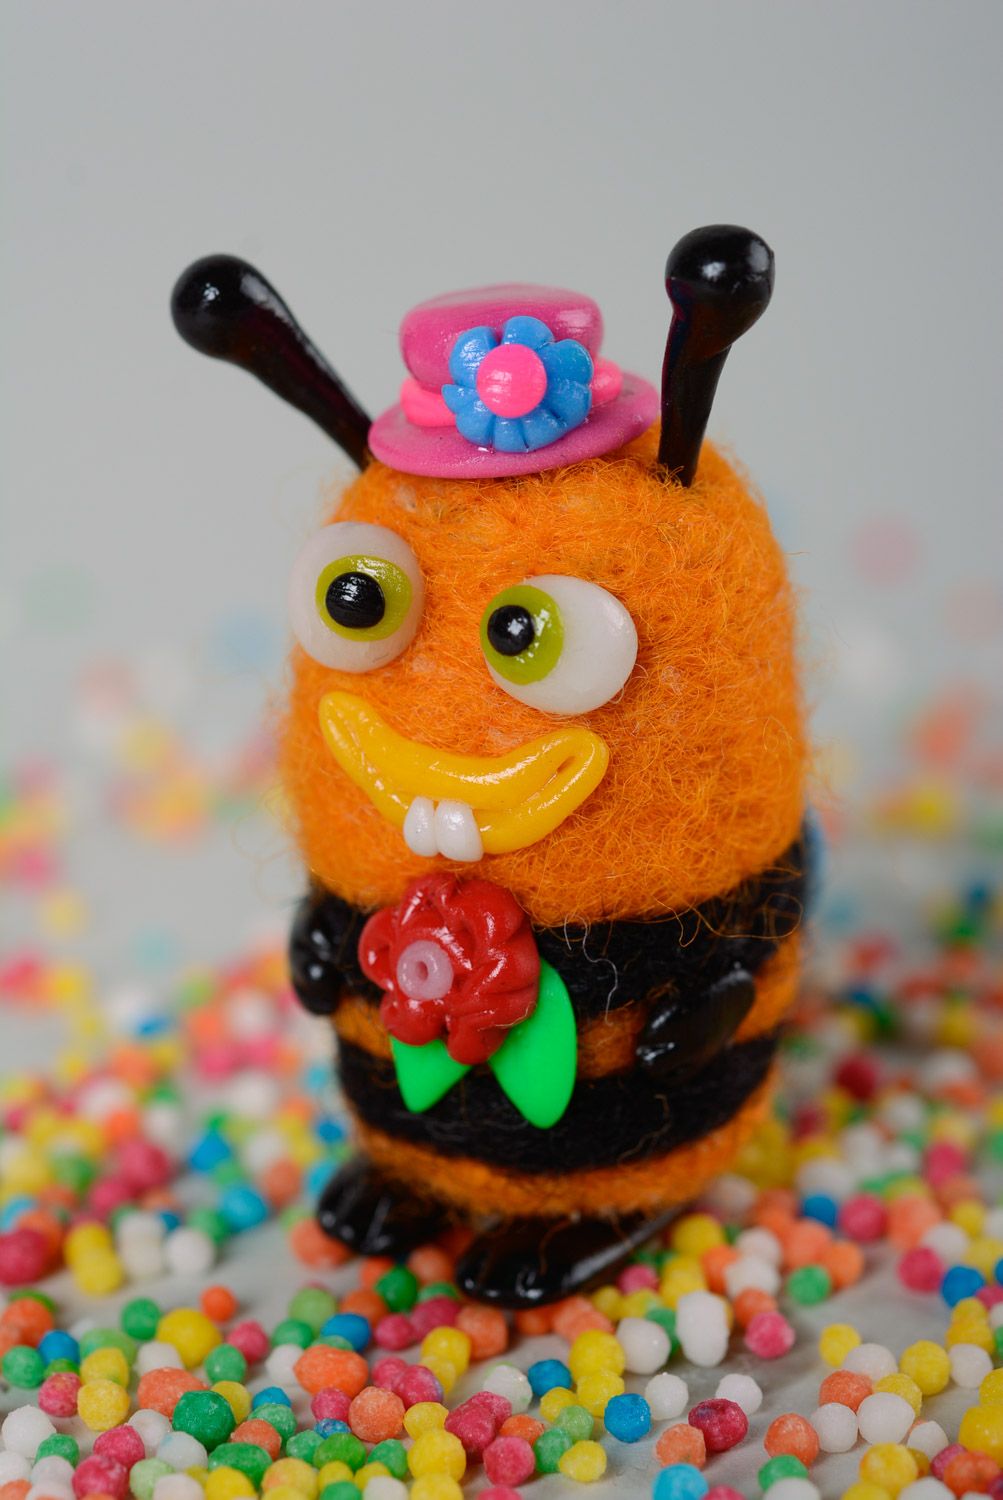 Миниатюрная валяная игрушка из шерсти и полимерной глины ручной работы пчелка фото 1